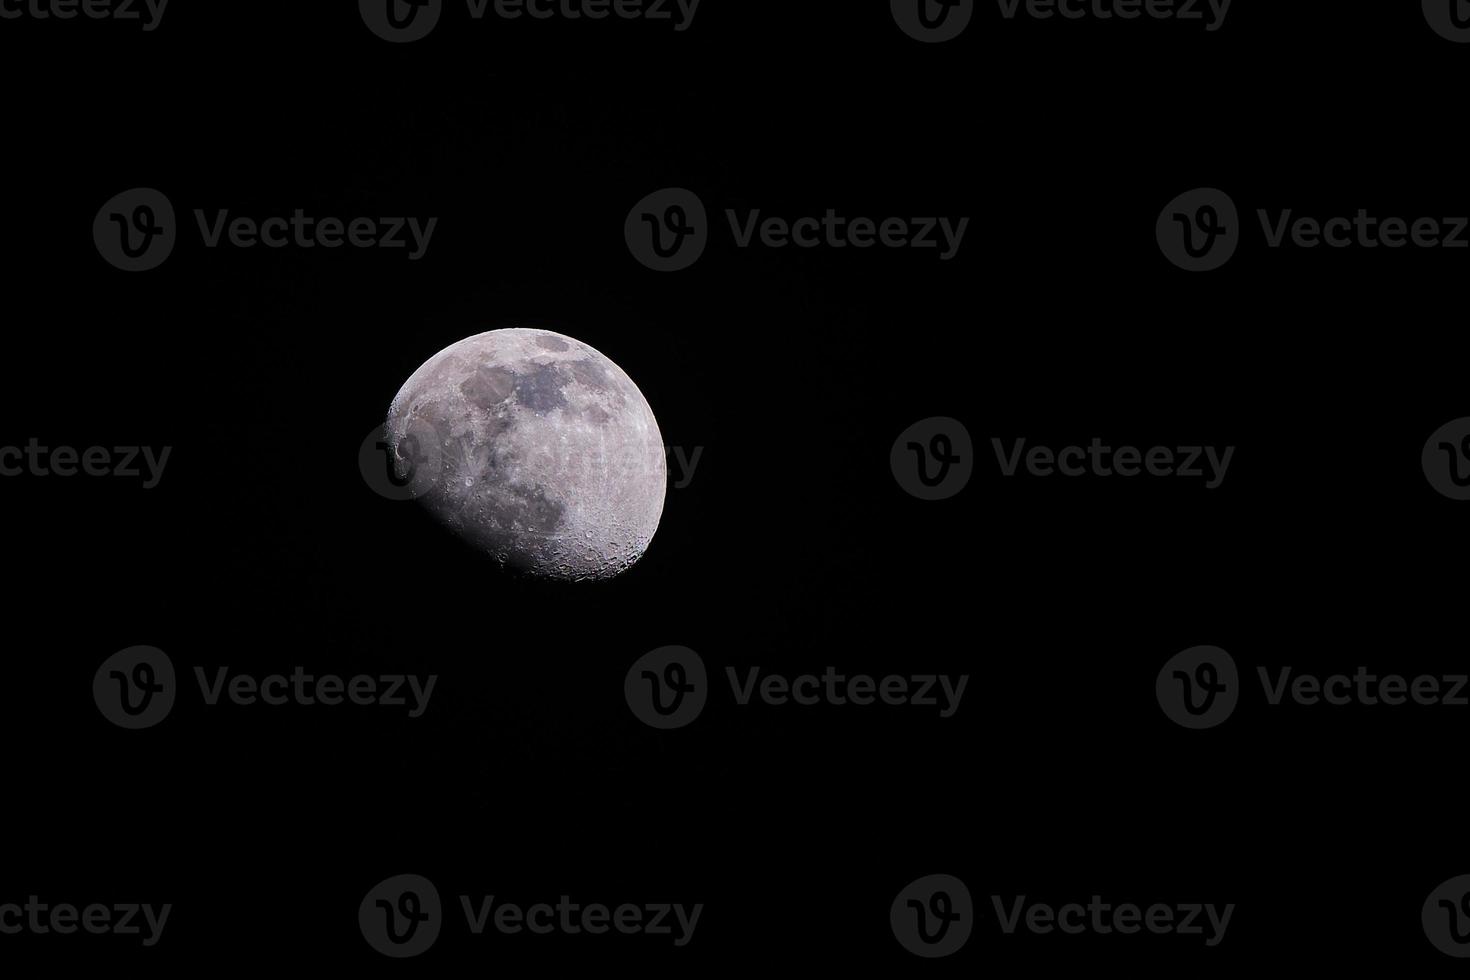 vaxning puckelryggig måne på natt på en Maj kväll i de nordlig hemisfär foto